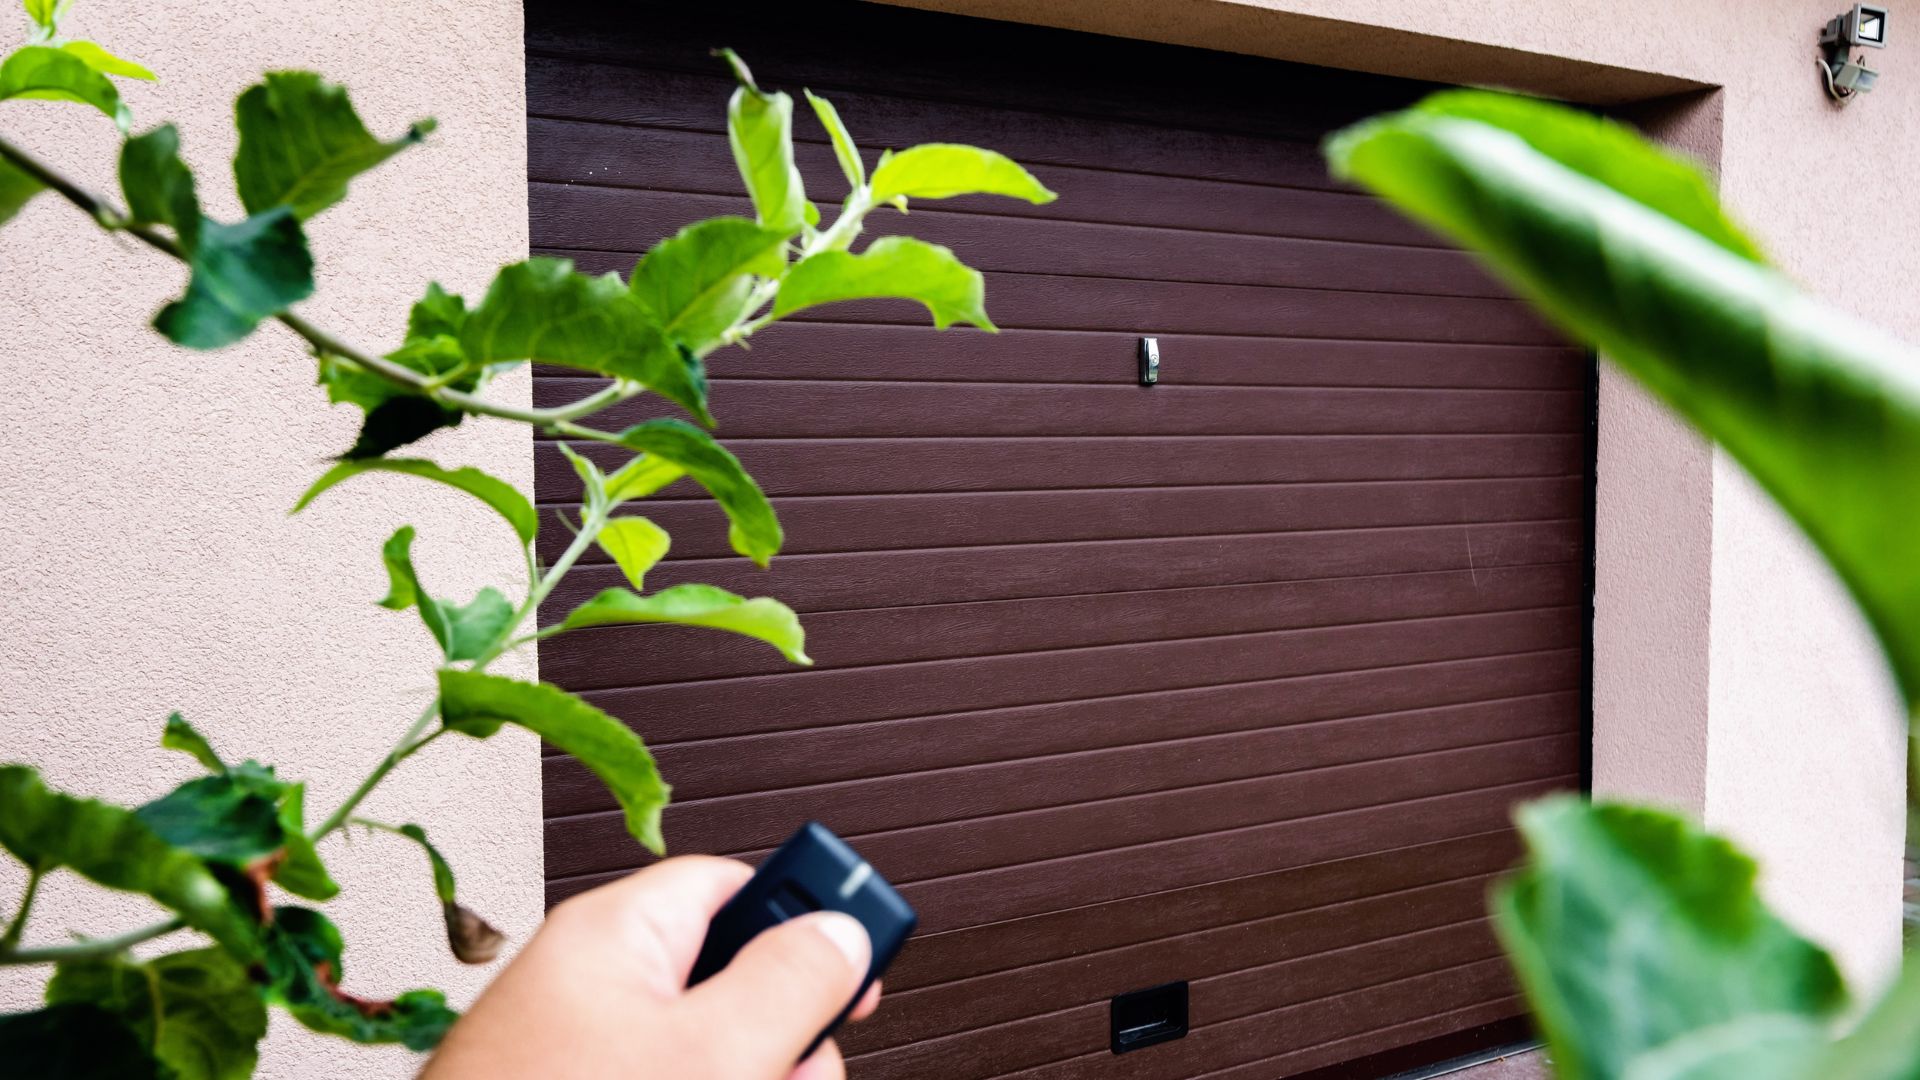 Program Your Garage Remote To Your Garage Door Opener